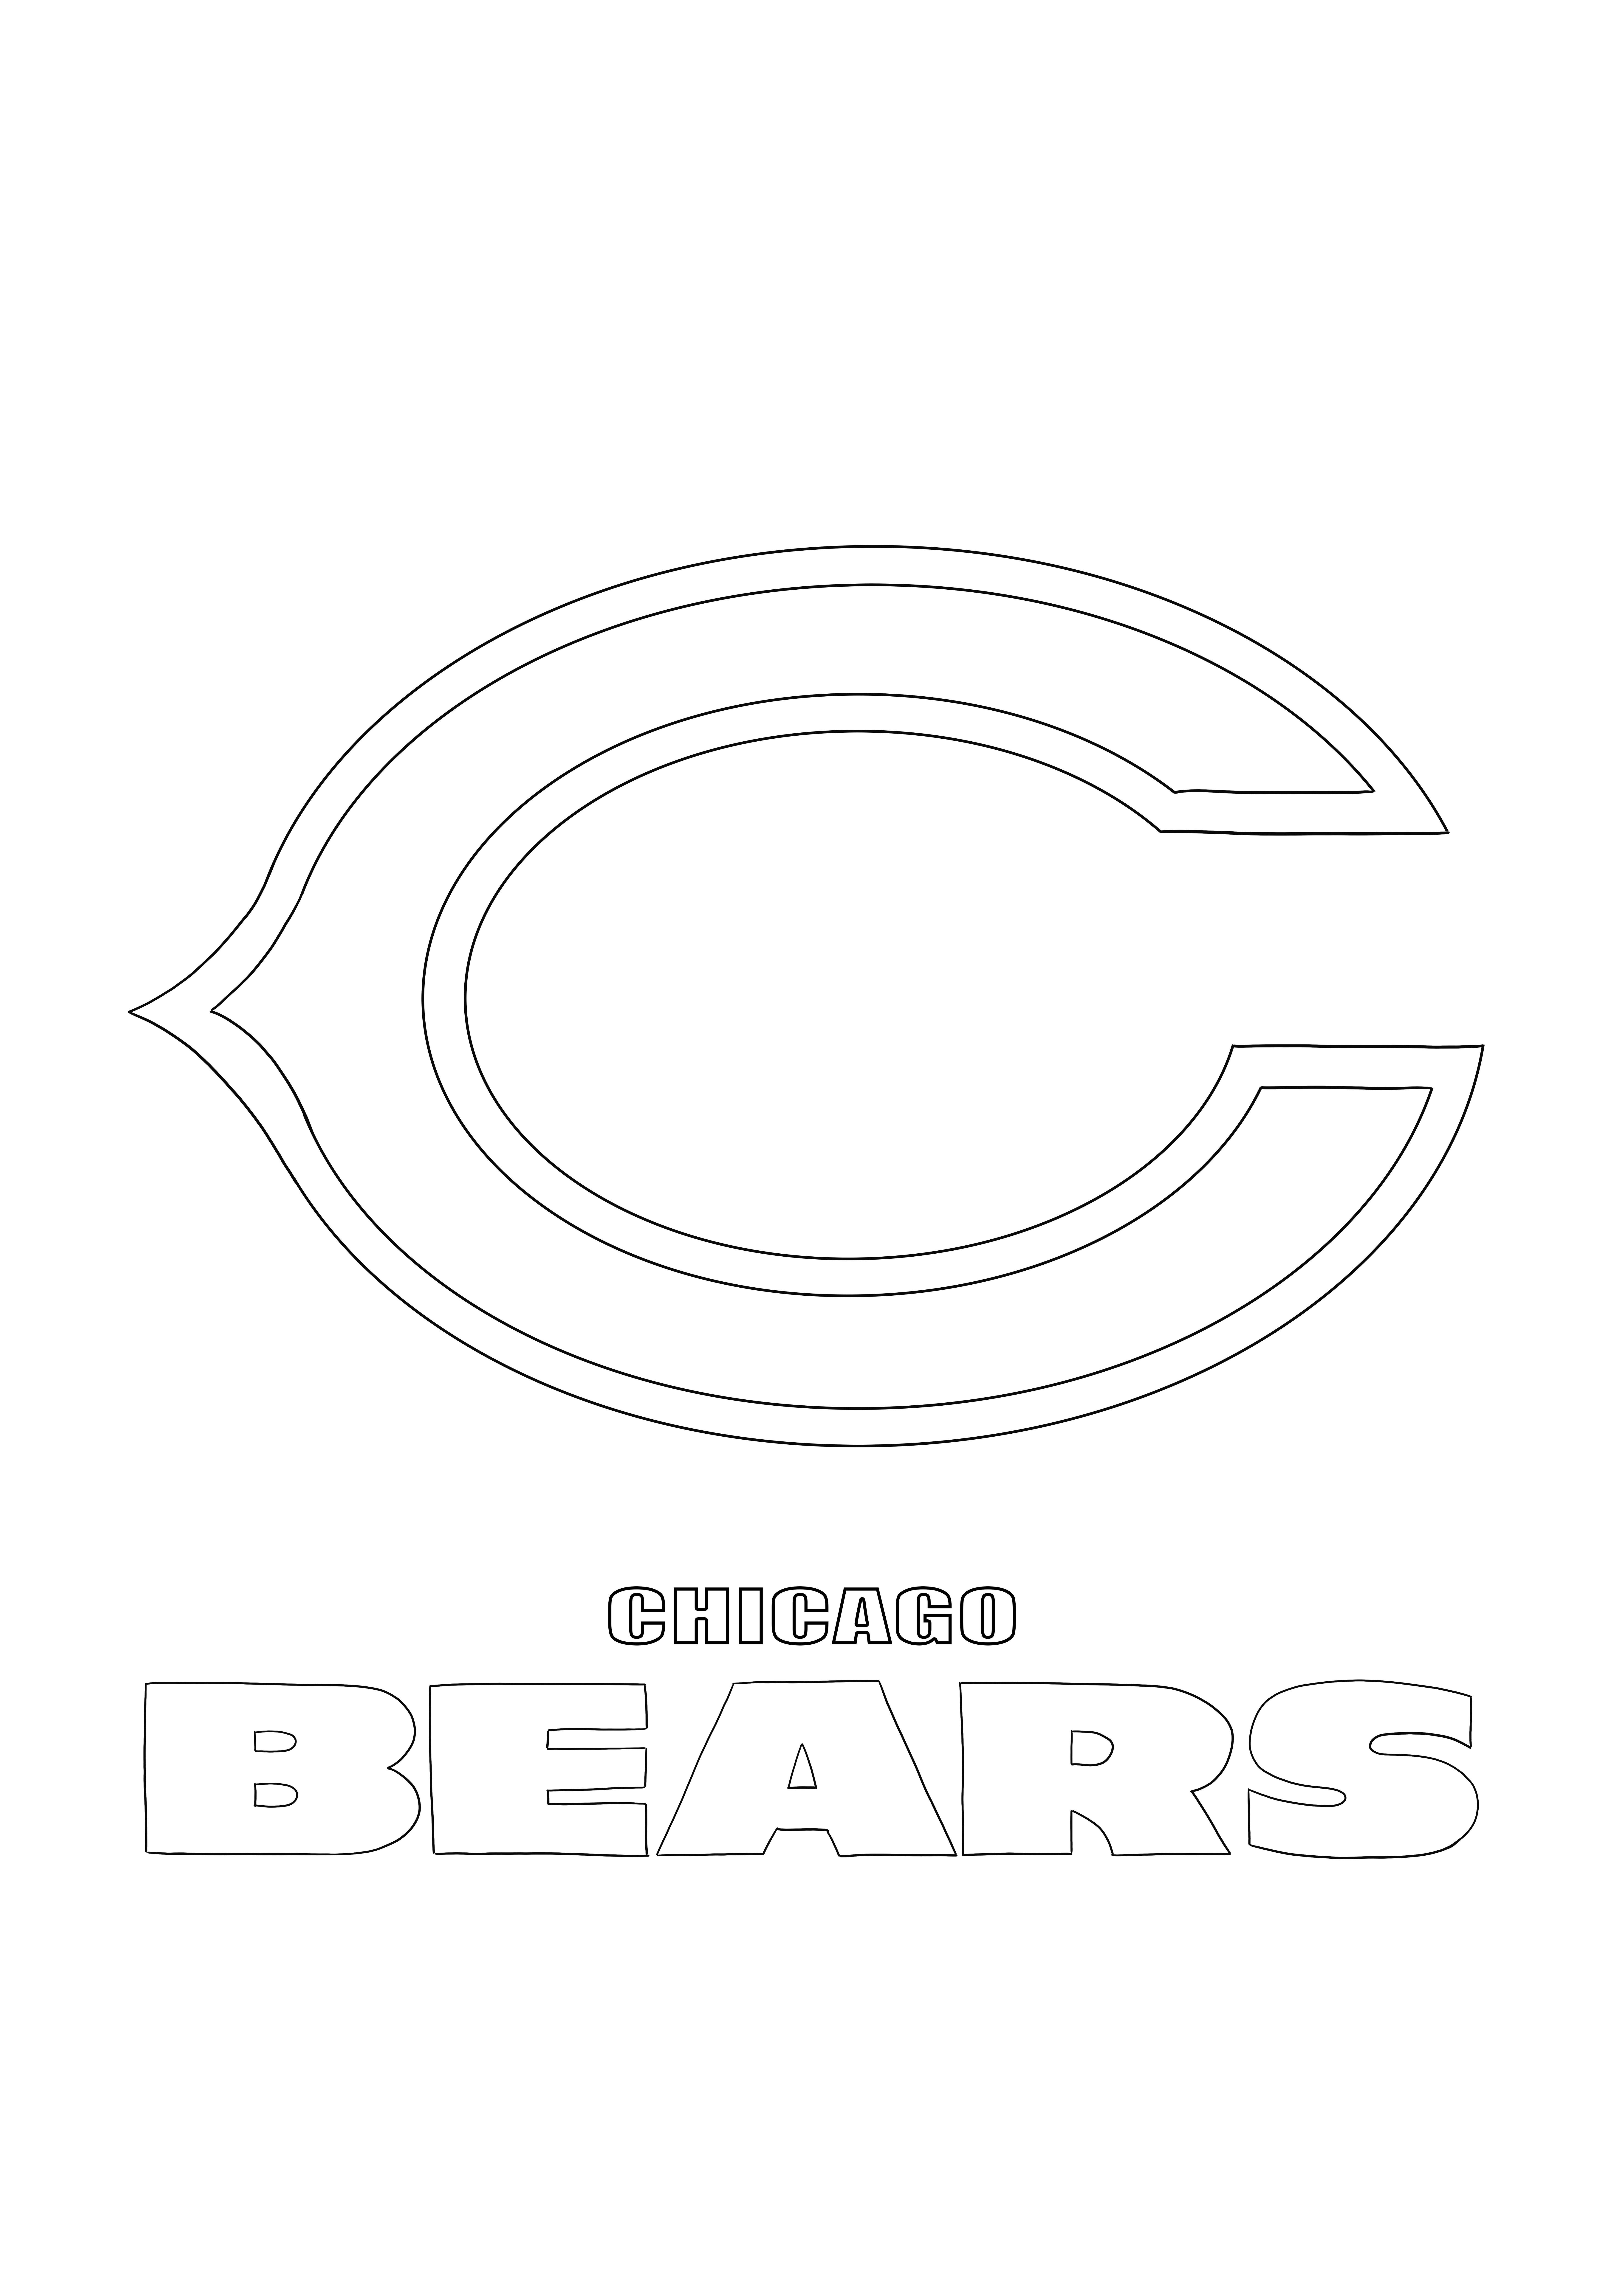 Logo Chicago Bears à imprimer et image sans couleur pour les enfants qui aiment la NFL